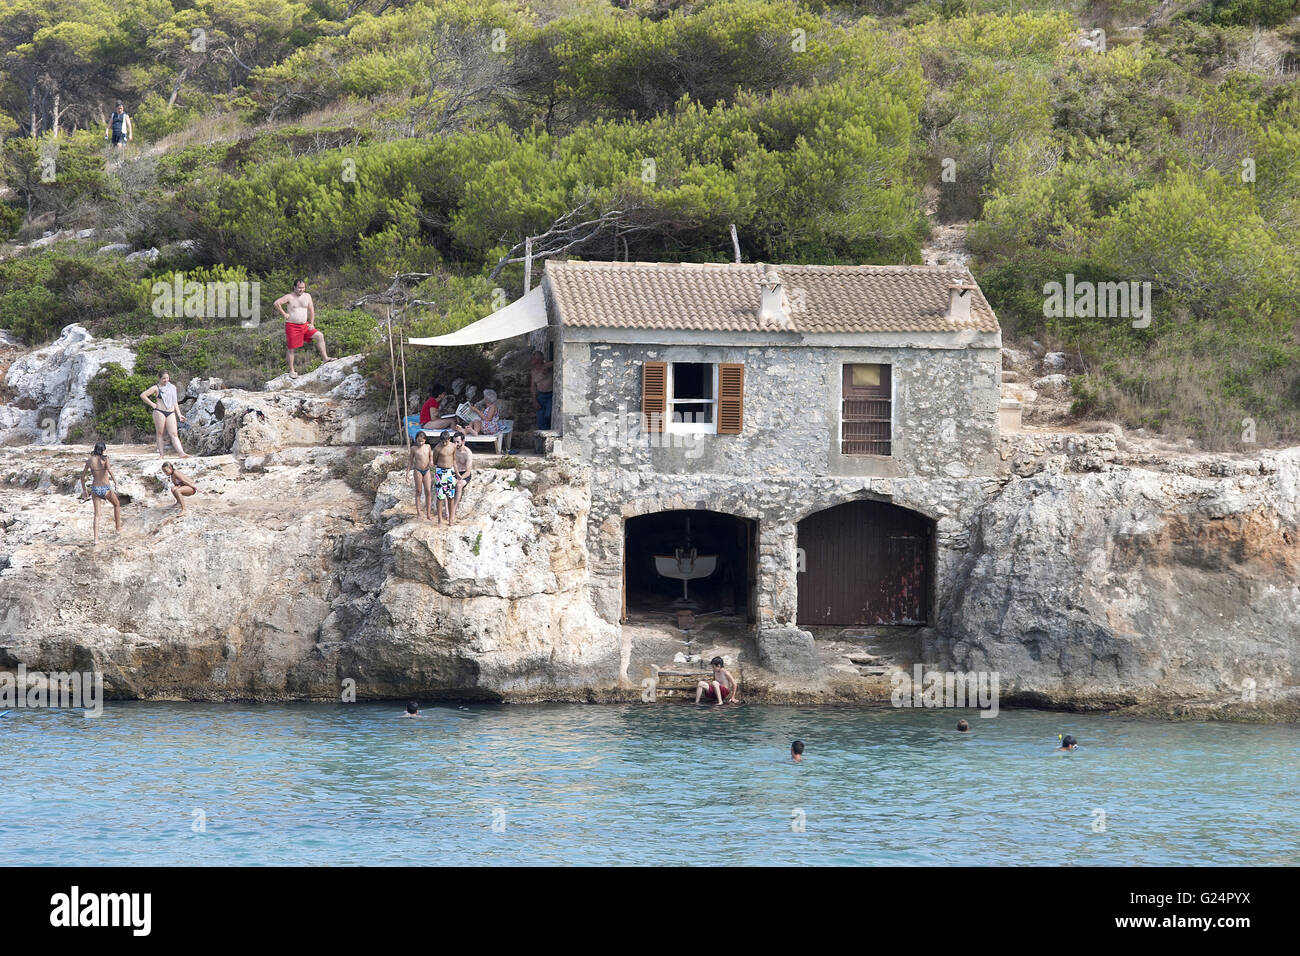 Una bella boathouse costruita nella roccia, Palma de Mallorca, Palma di Maiorca, estate, turismo, relax, vacanze, spiaggia, mare Foto Stock